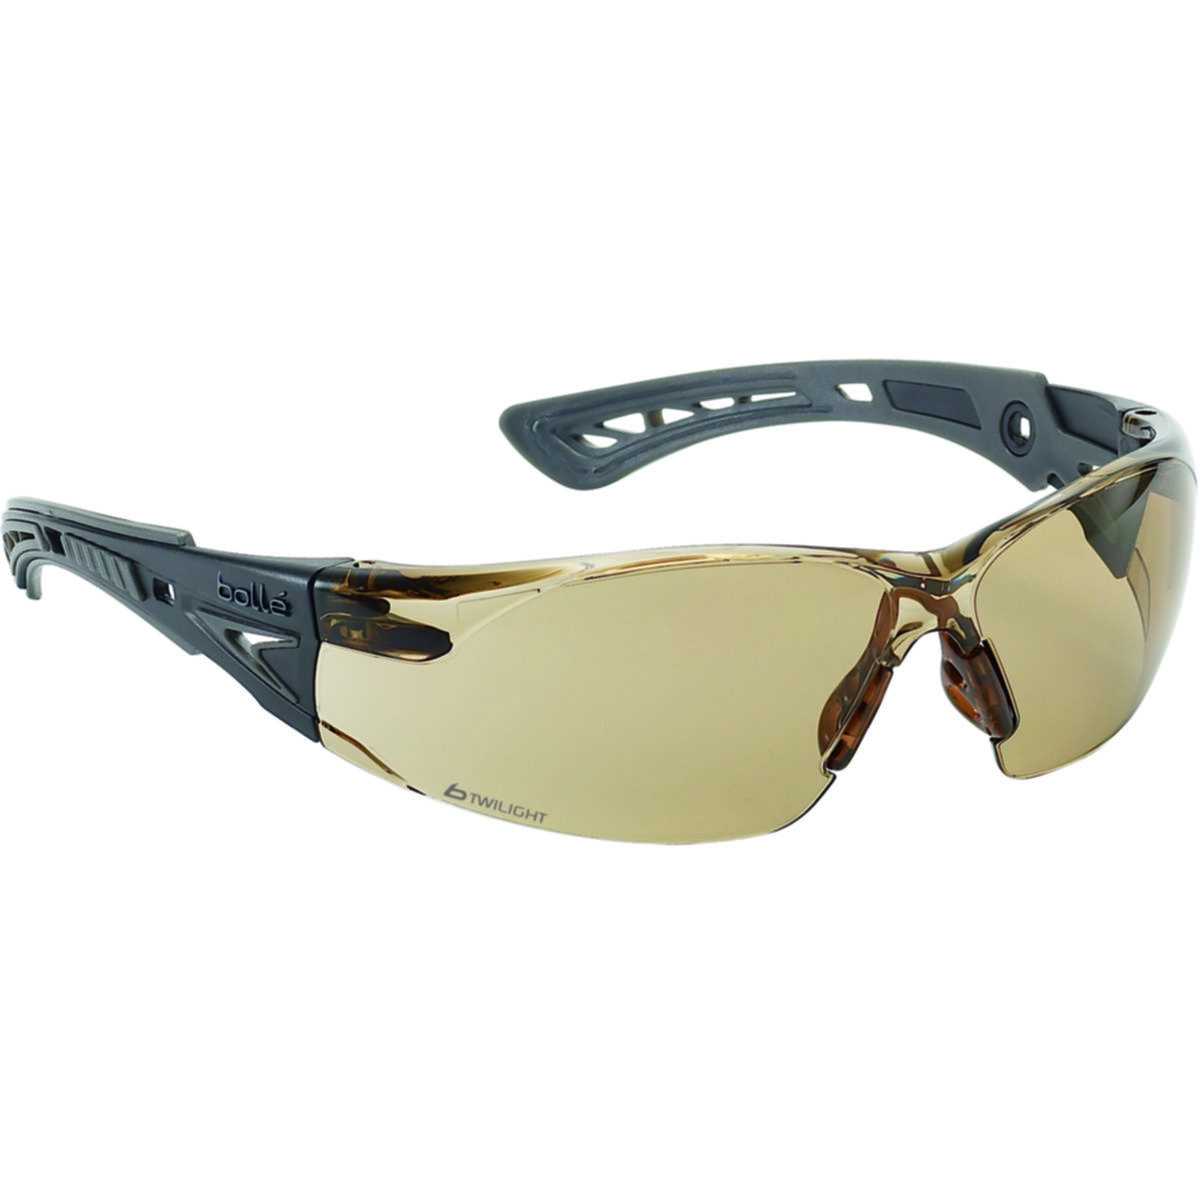 Gafas De Seguridad-rushptwi-Uv Protección Ocular-Twilight Anti Fog Bolle Rush 